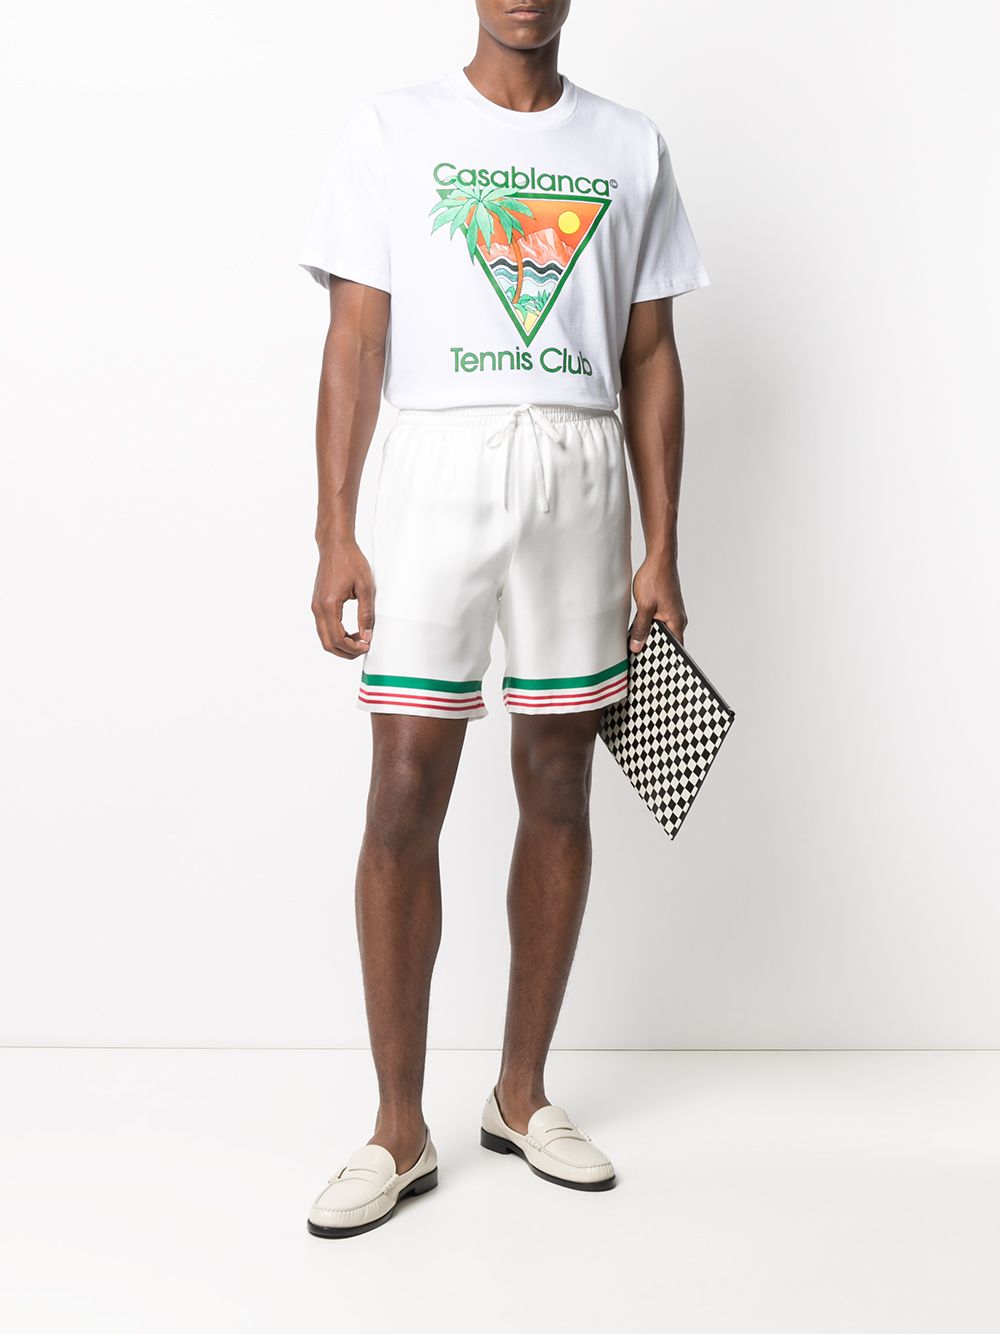 фото Casablanca шорты tennis с полосками